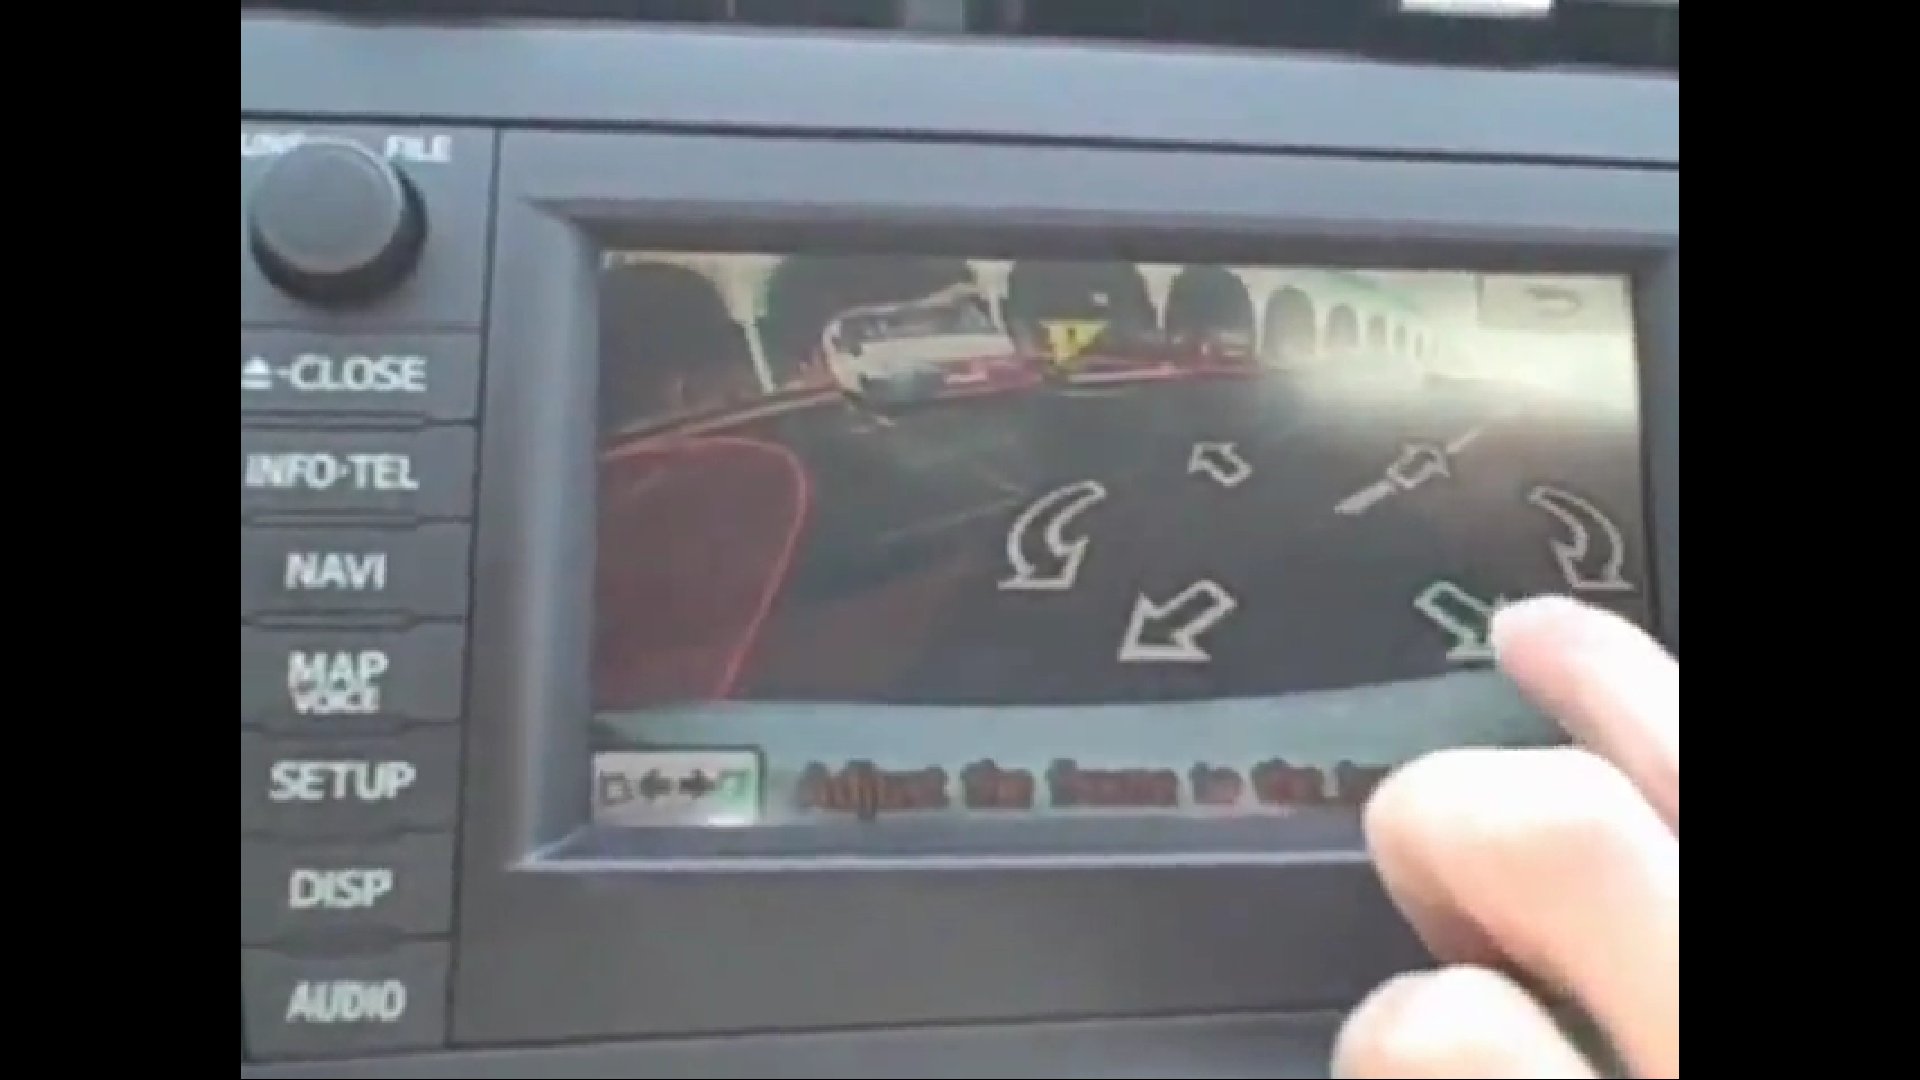 Le système d'assistance au stationnement de Toyota : une caméra filme l'environnement quand le conducteur a repéré une place possible. L'ordinateur de bord présente sur l'écran les différentes options possibles pour garer le véhicule. Le conducteur choisit et la manœuvre est alors effectuée automatiquement. © Toyota